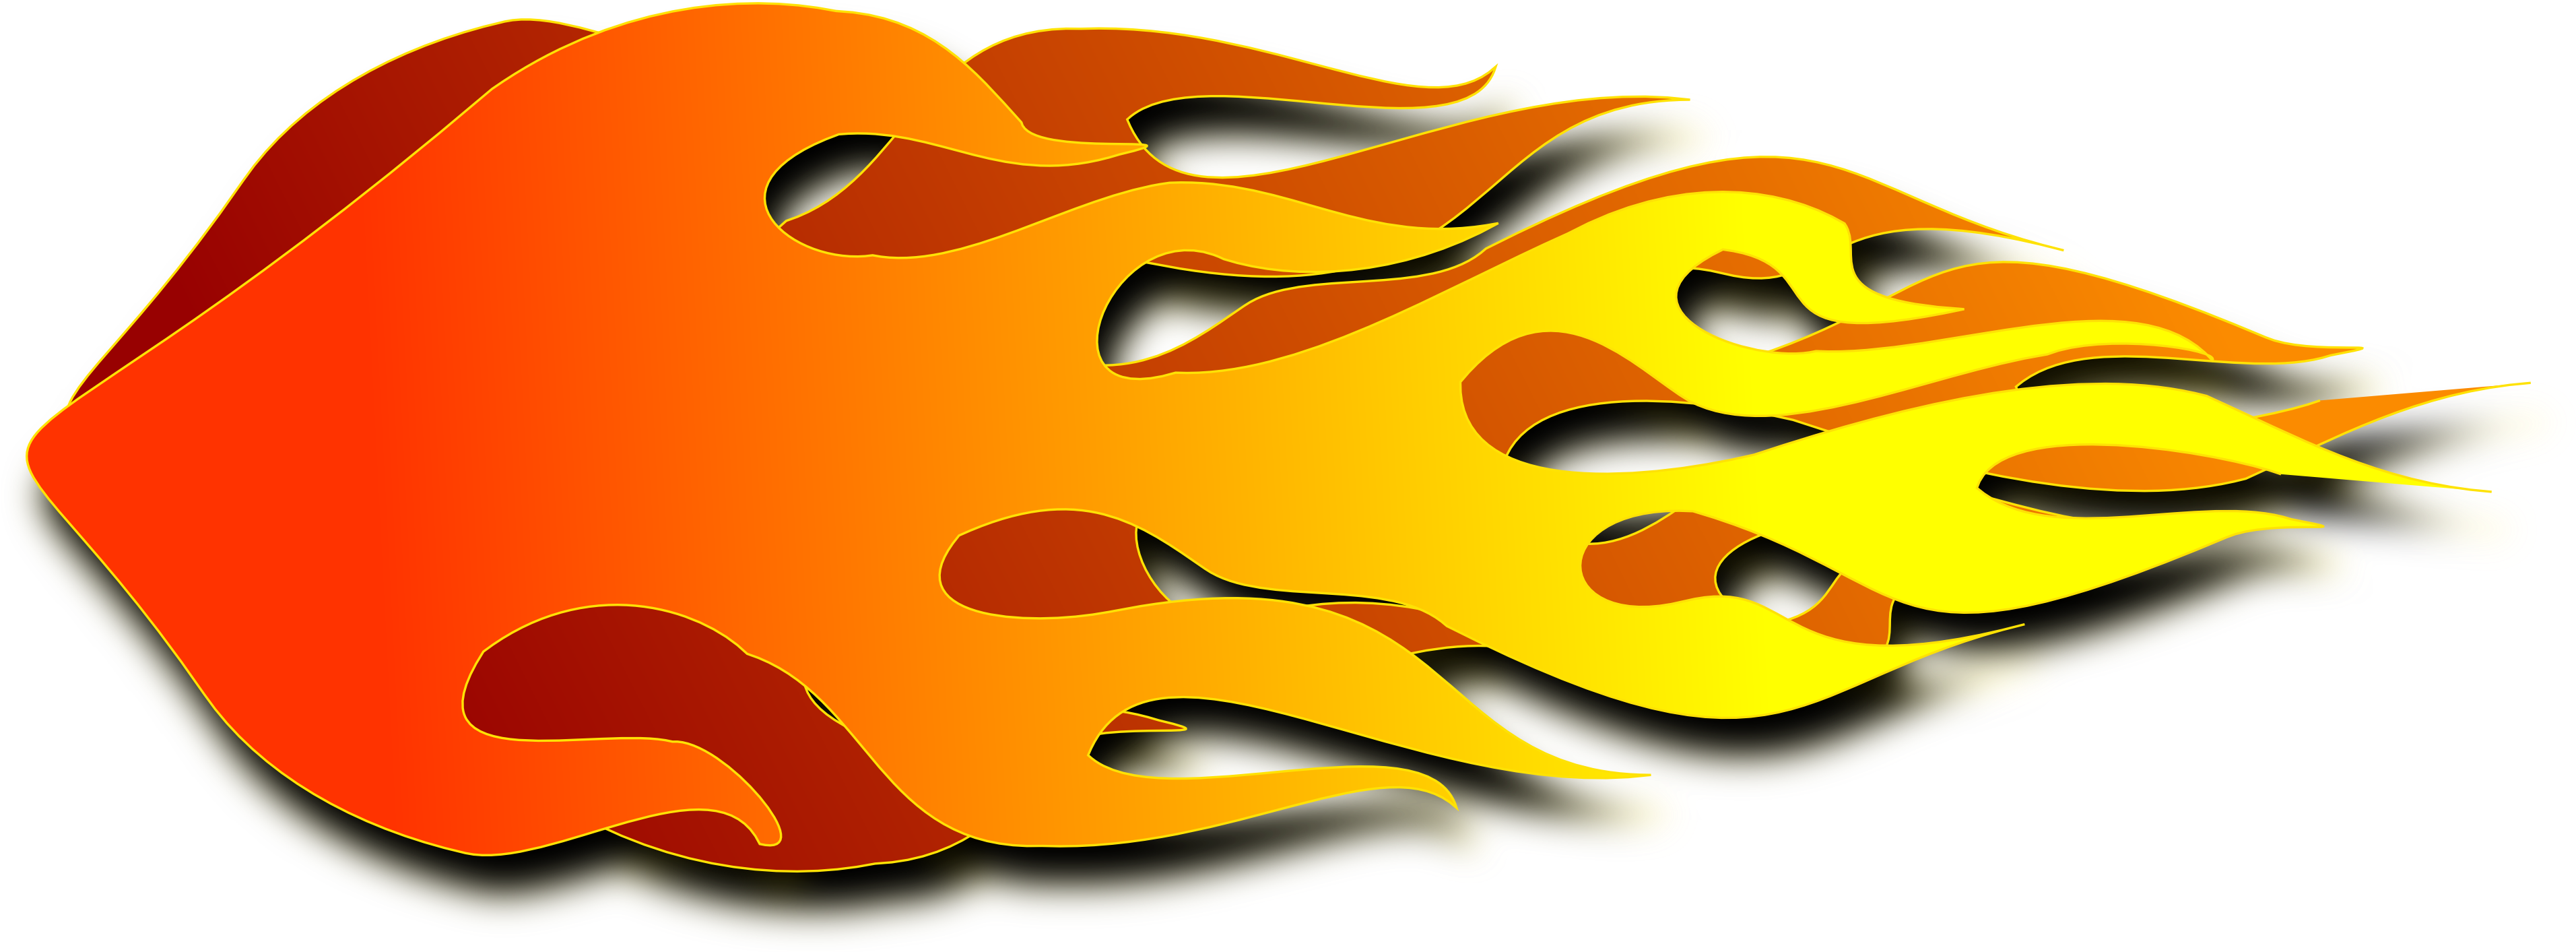 Race Car Clipart Flame - Rocket Flames Clipart (3840x1412)